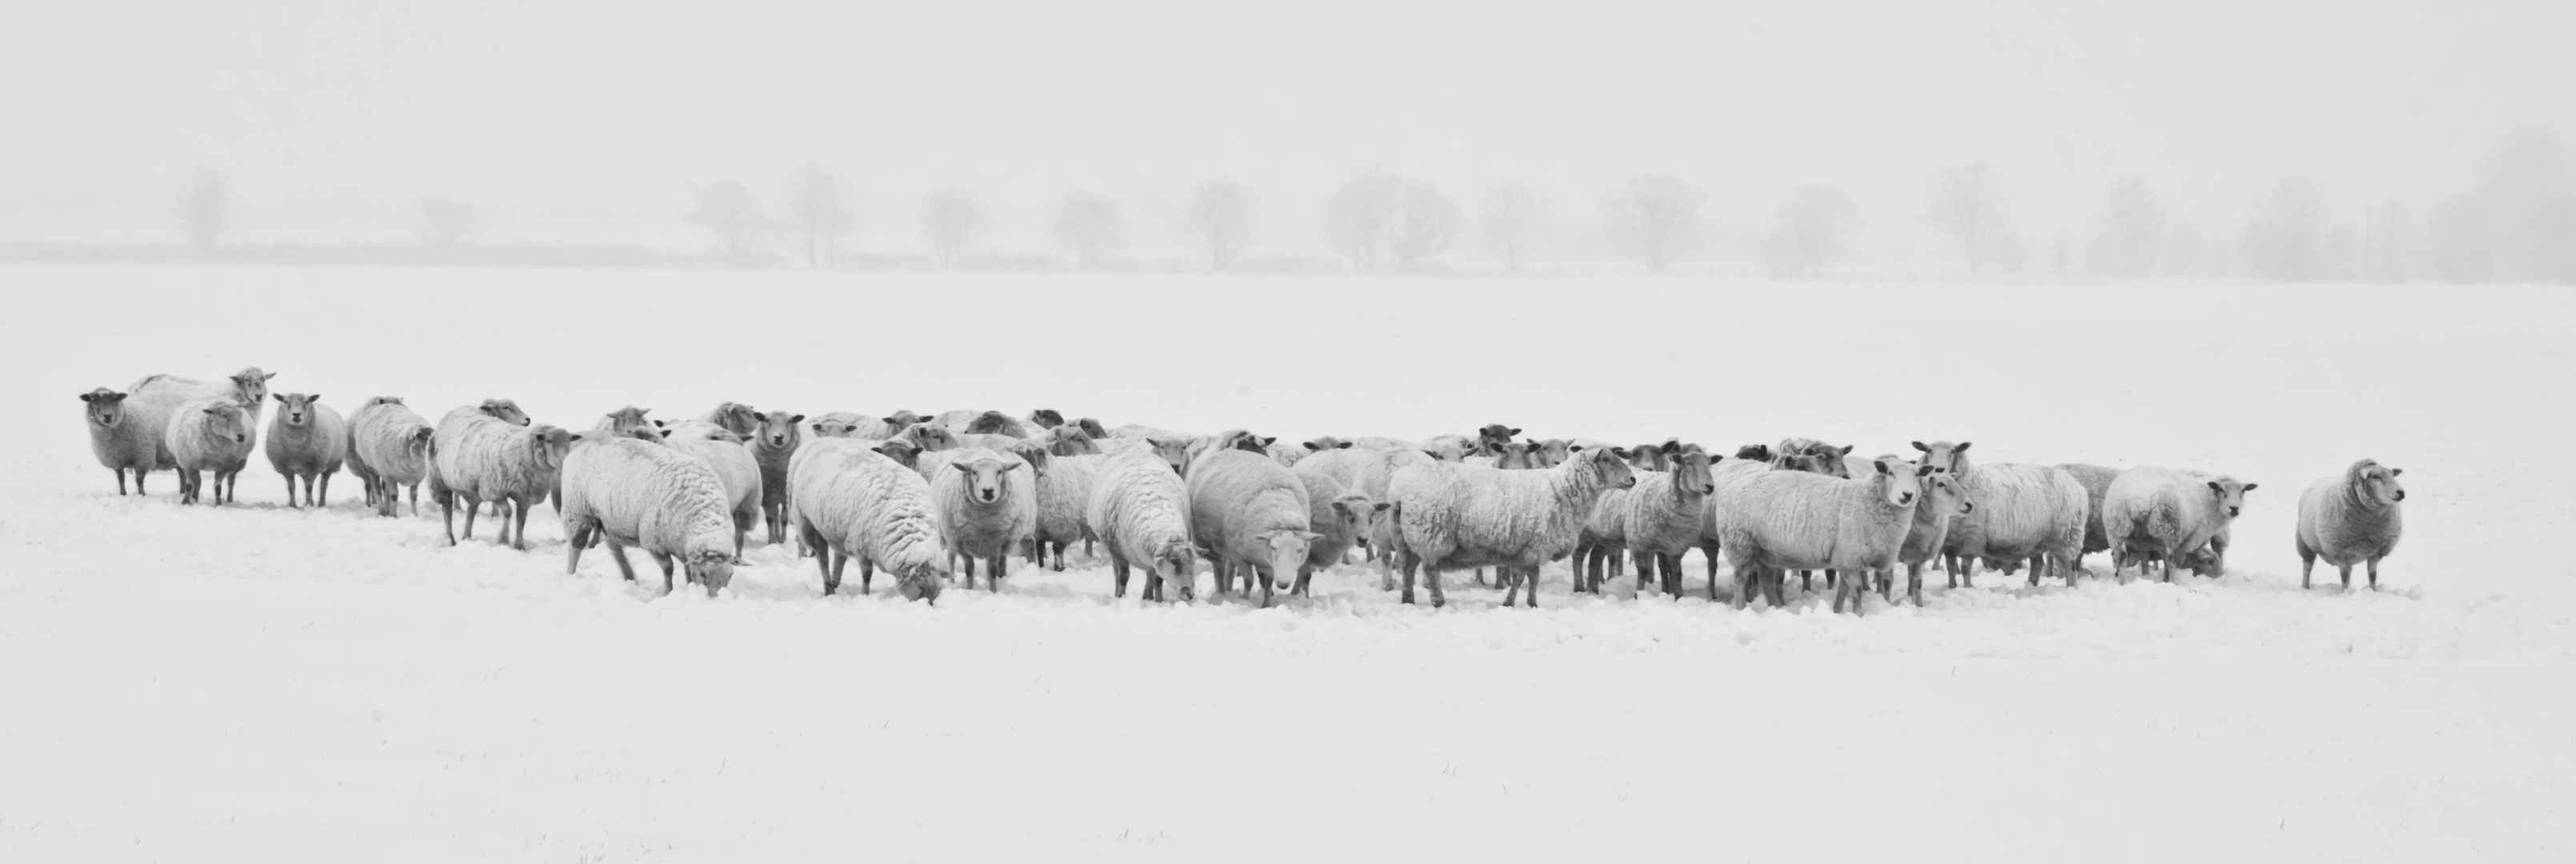 冬天 雪 羊 动物 8K图片-